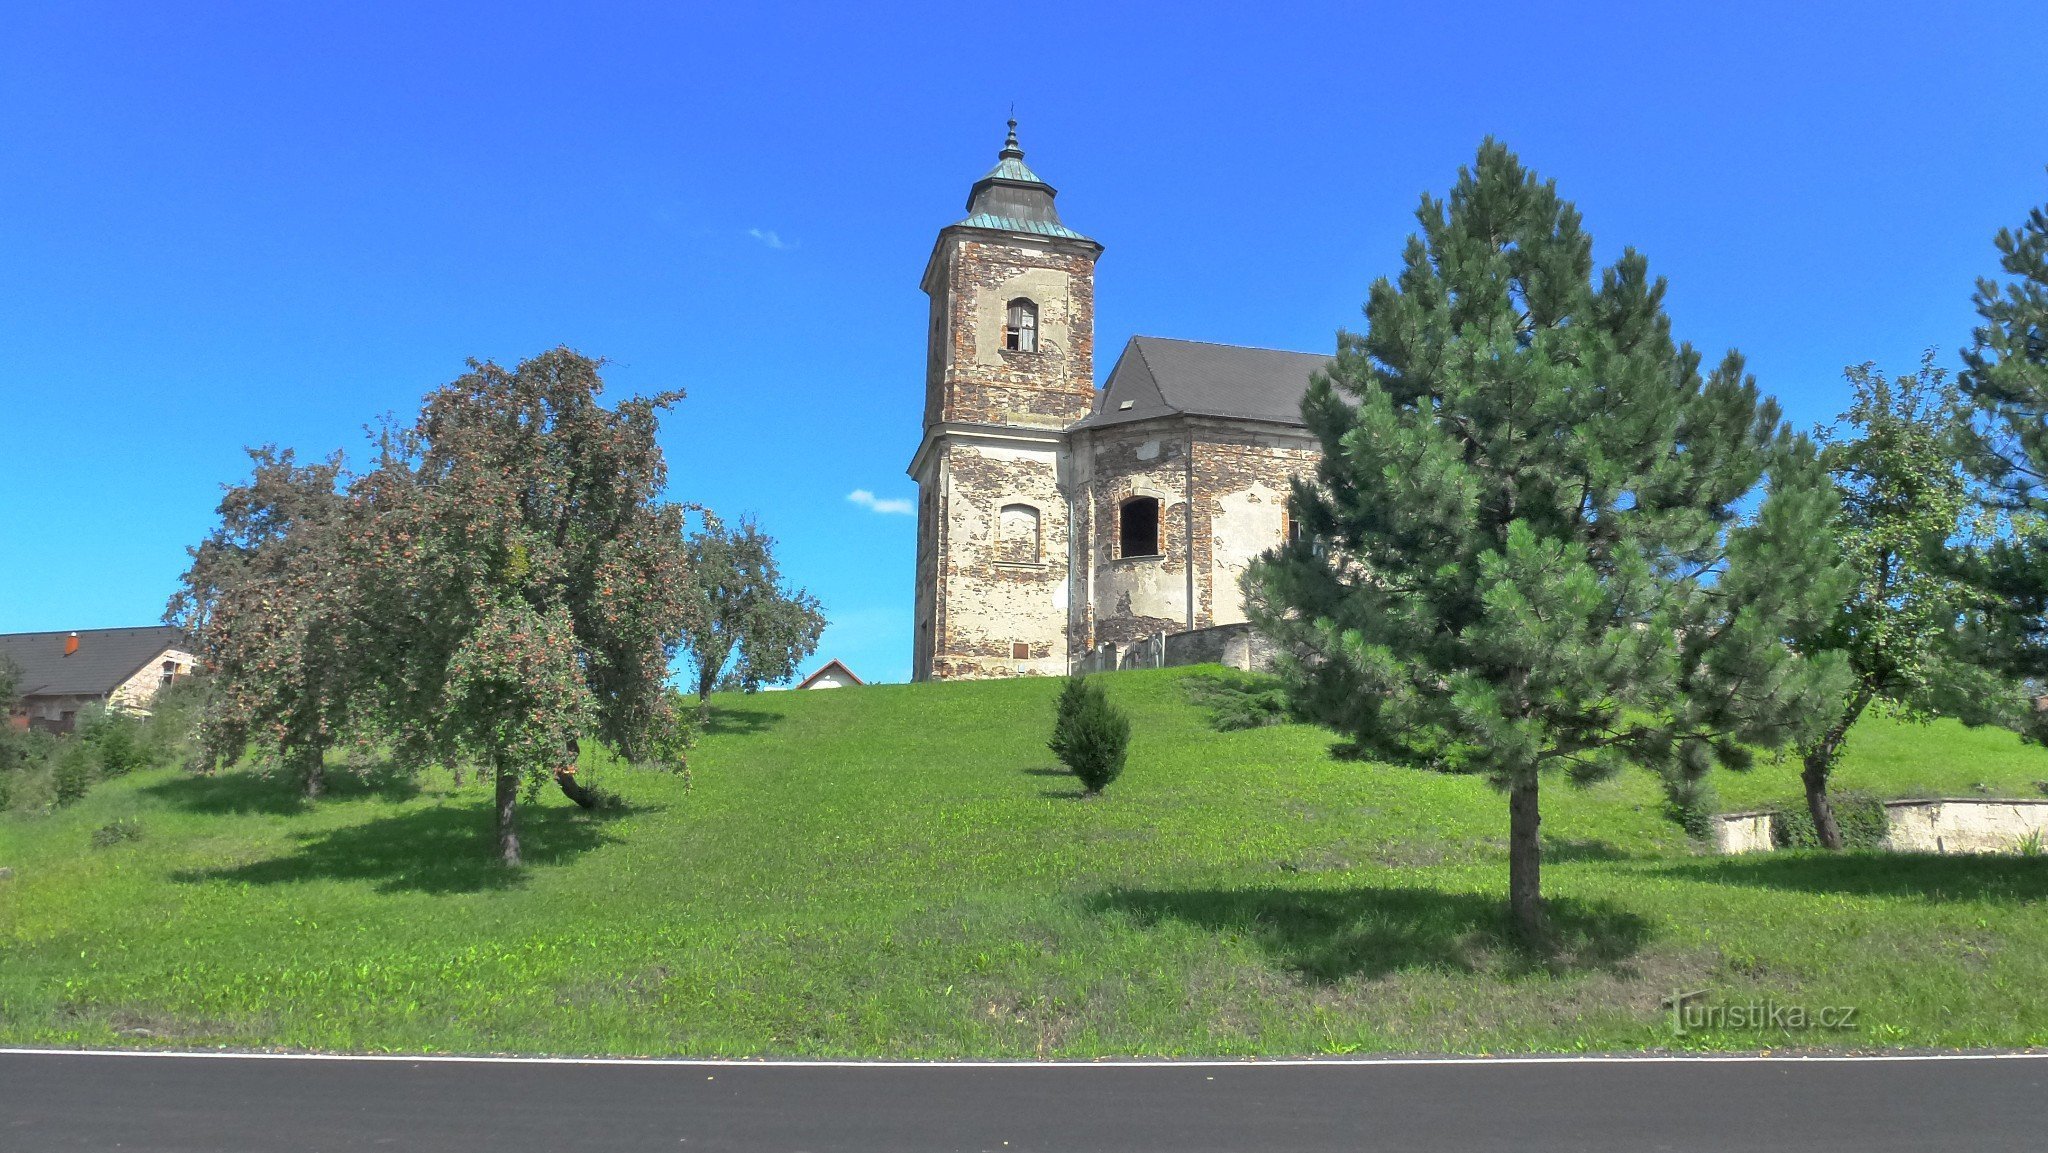 村の主な特徴は 1738 年に建てられた教会で、元の木造の教会は 1352 年に建てられたと言われています。